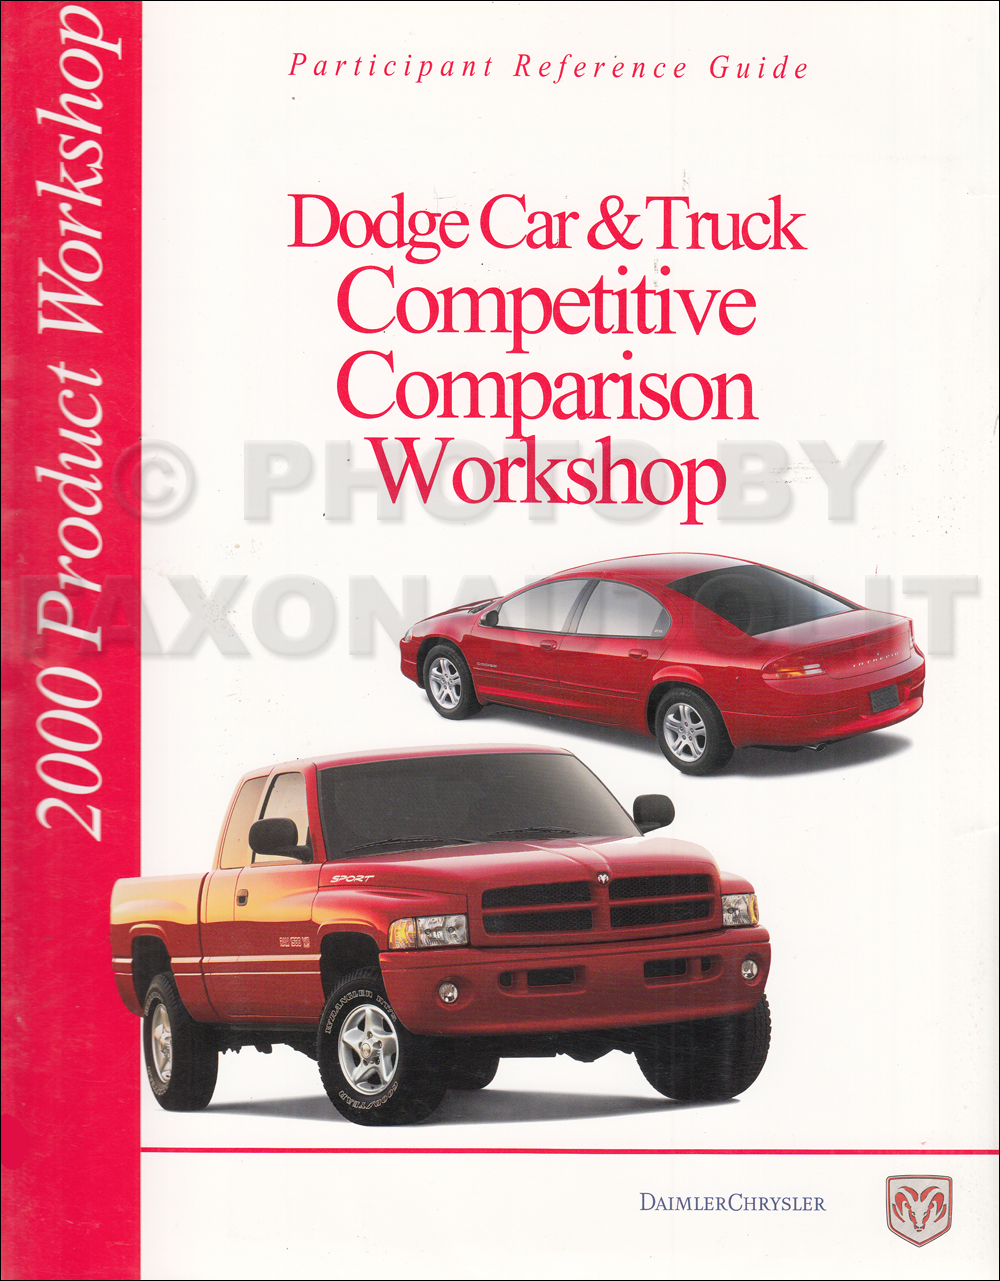 2000 Dodge Competitive Comparison Dealer Album Original